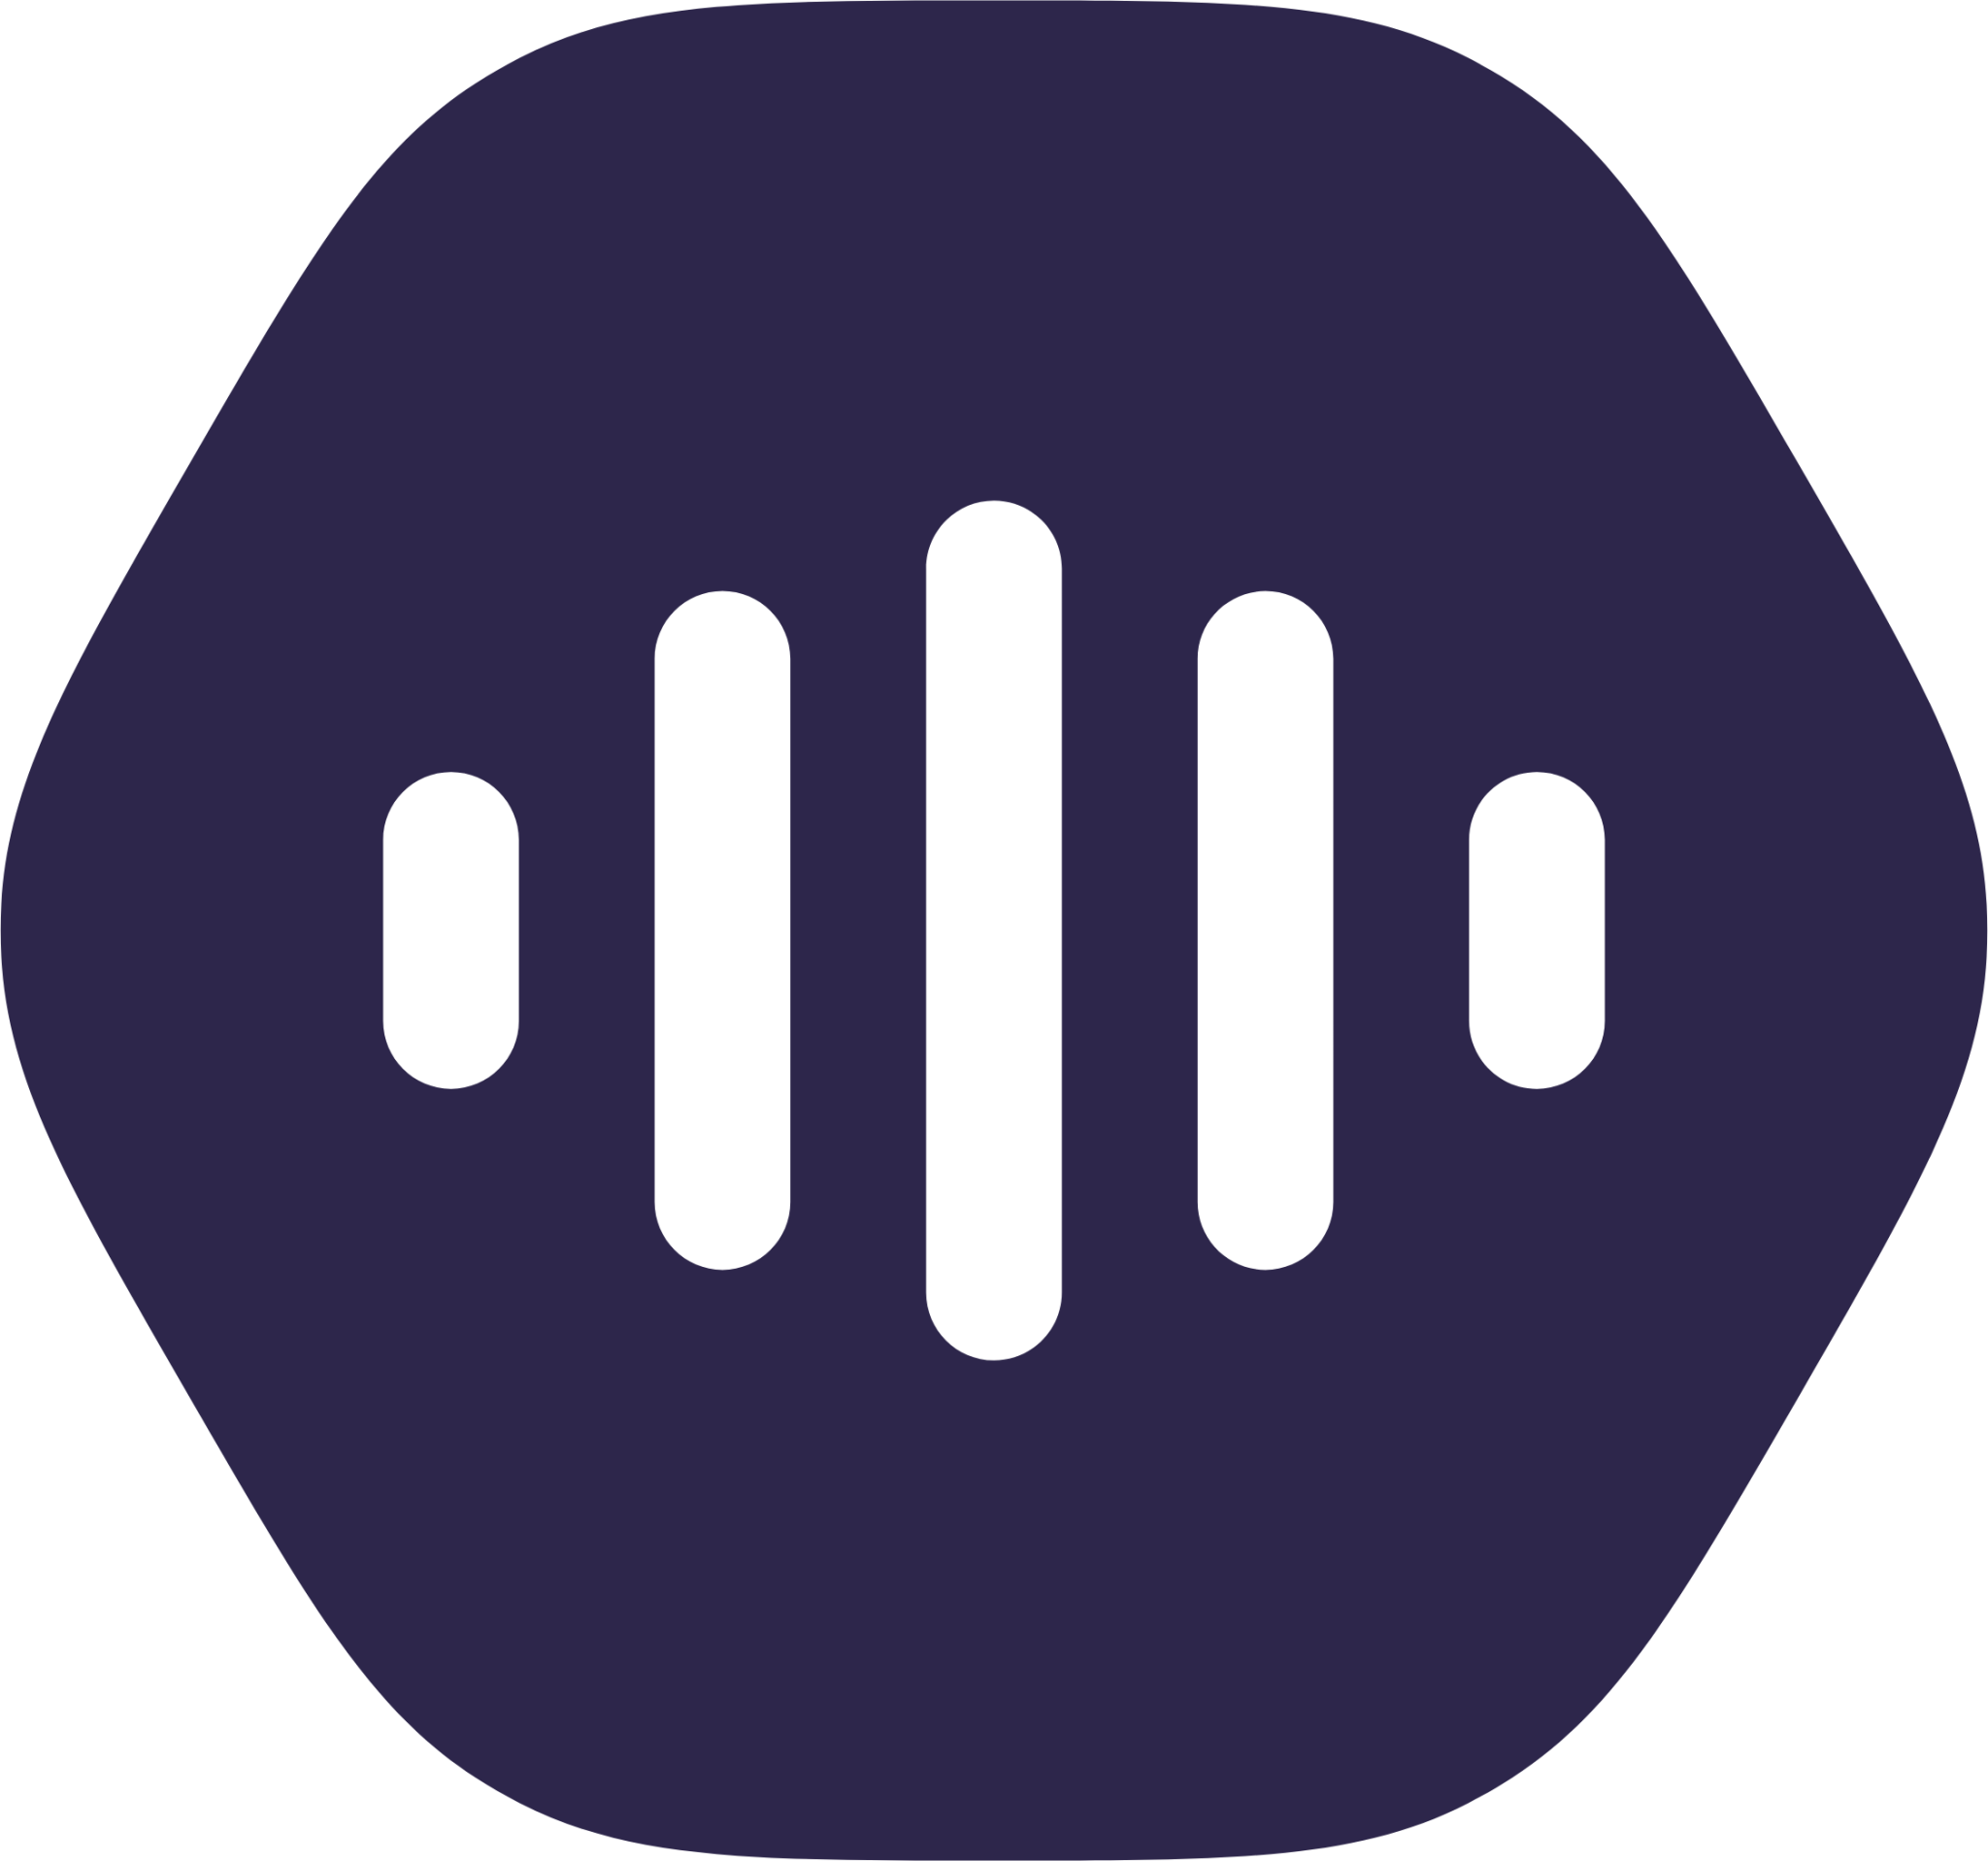 voice shape 2 icon